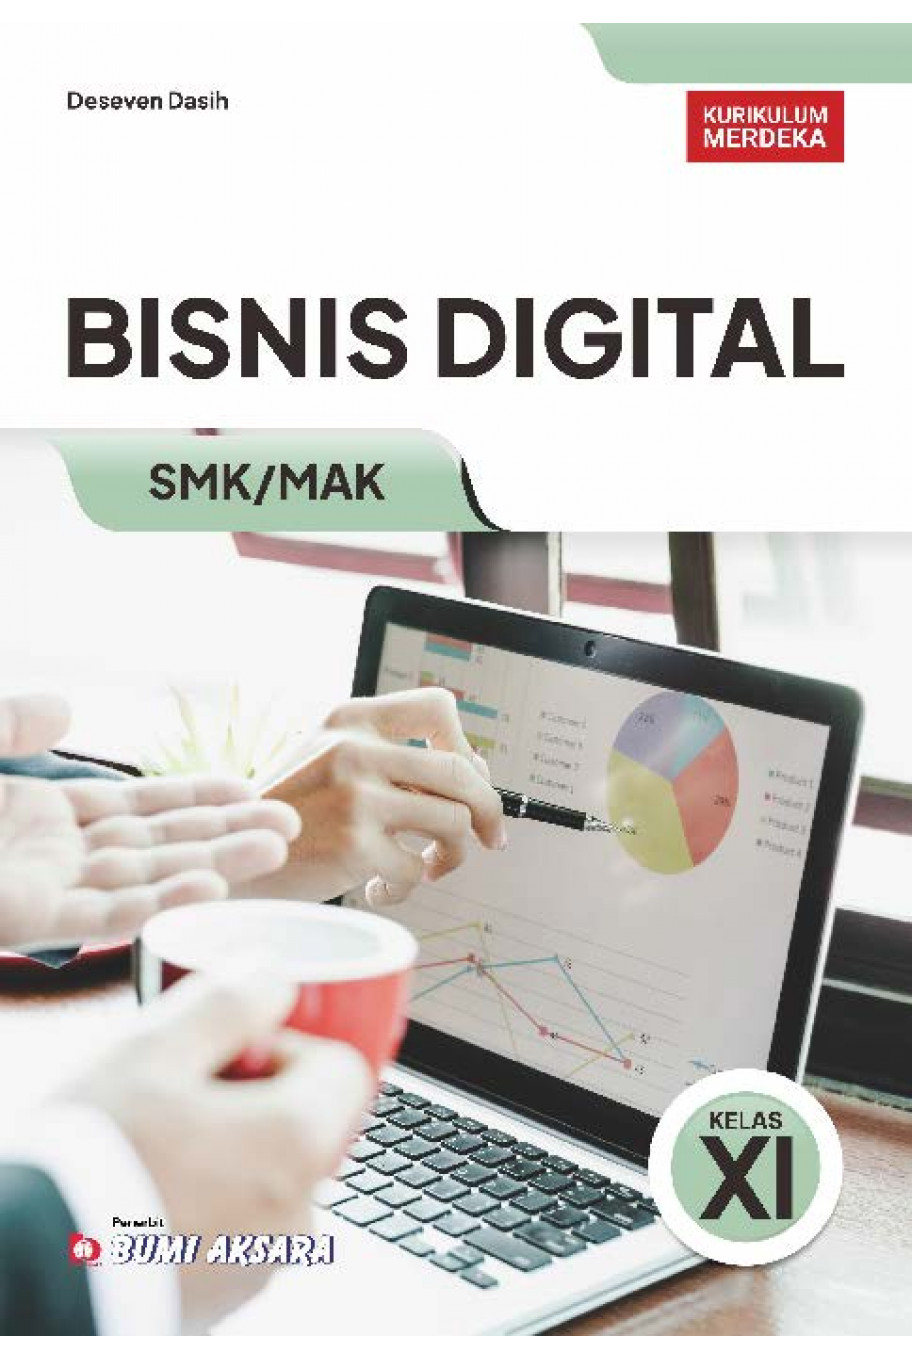 Bisnis Digital SMK/MAK Kelas XI